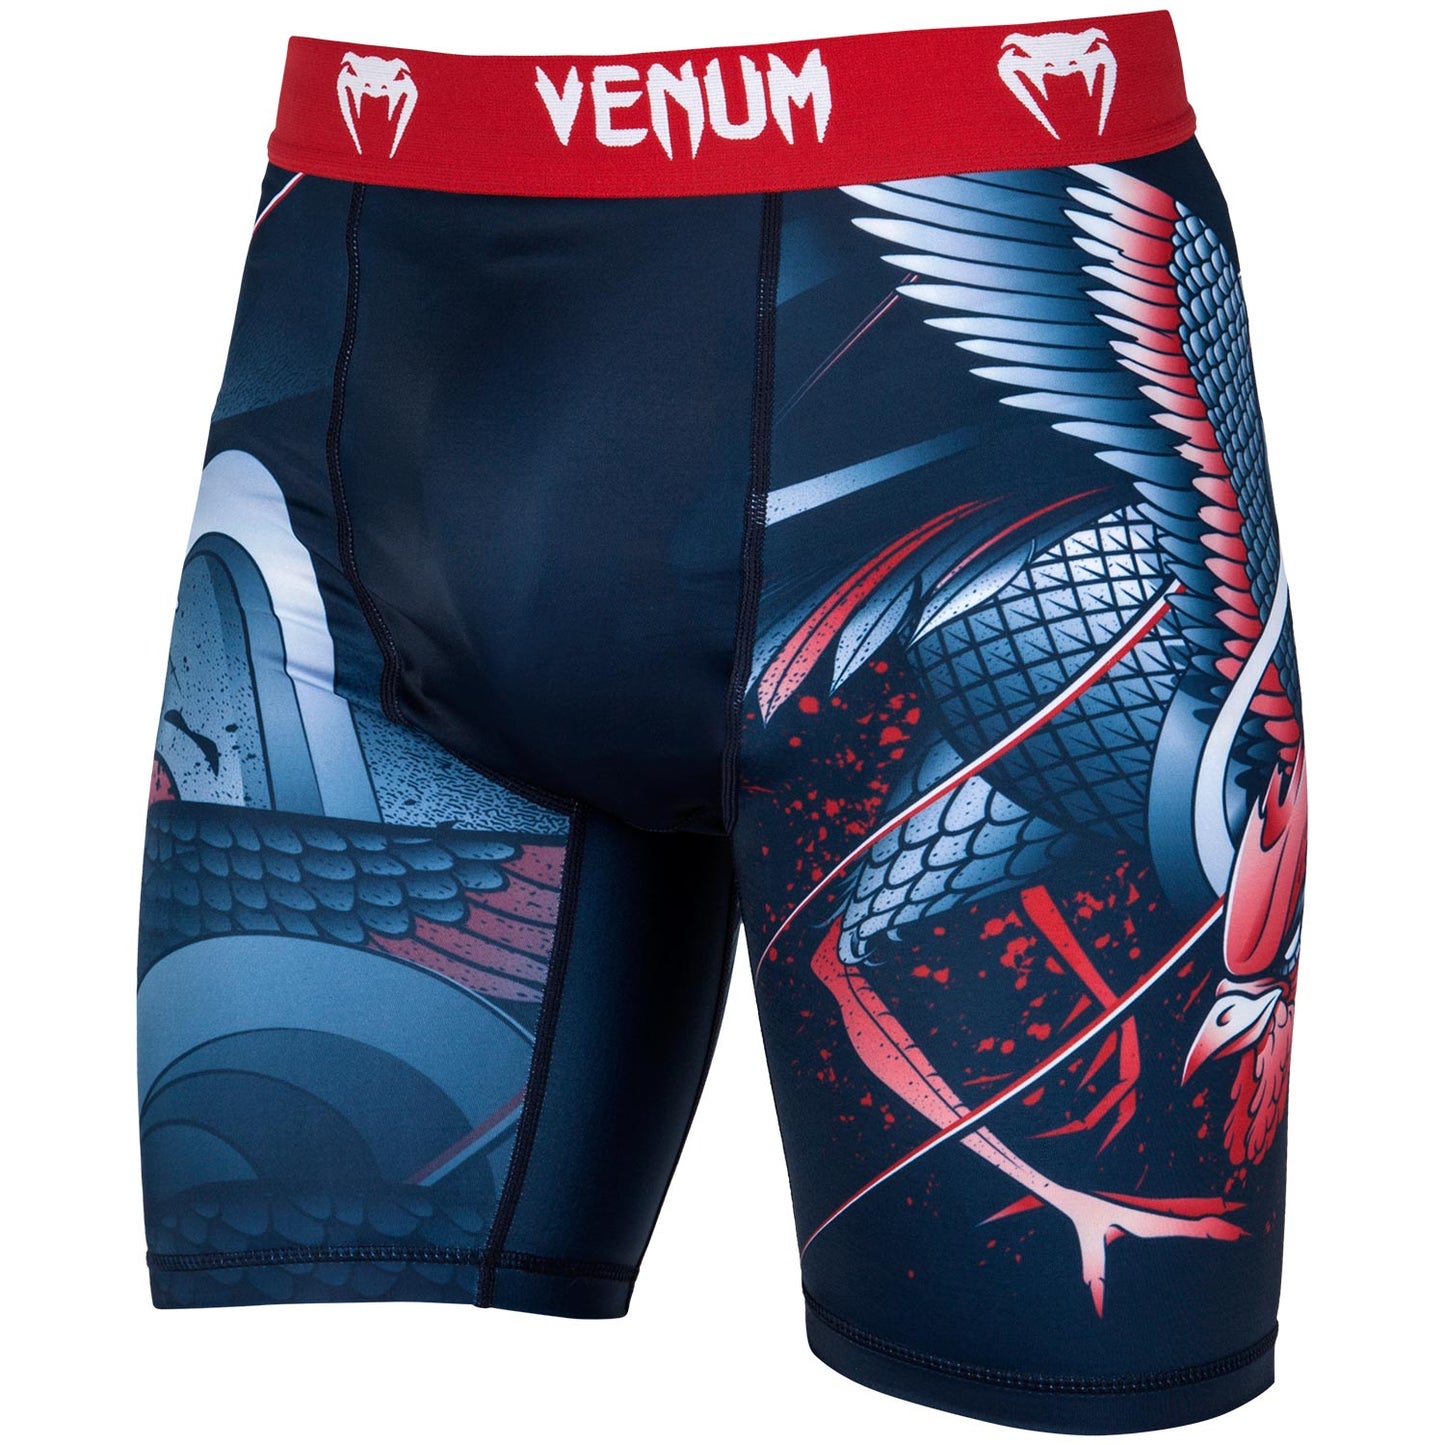 Venum Rooster Compression Shorts - Navy Blue/Orange